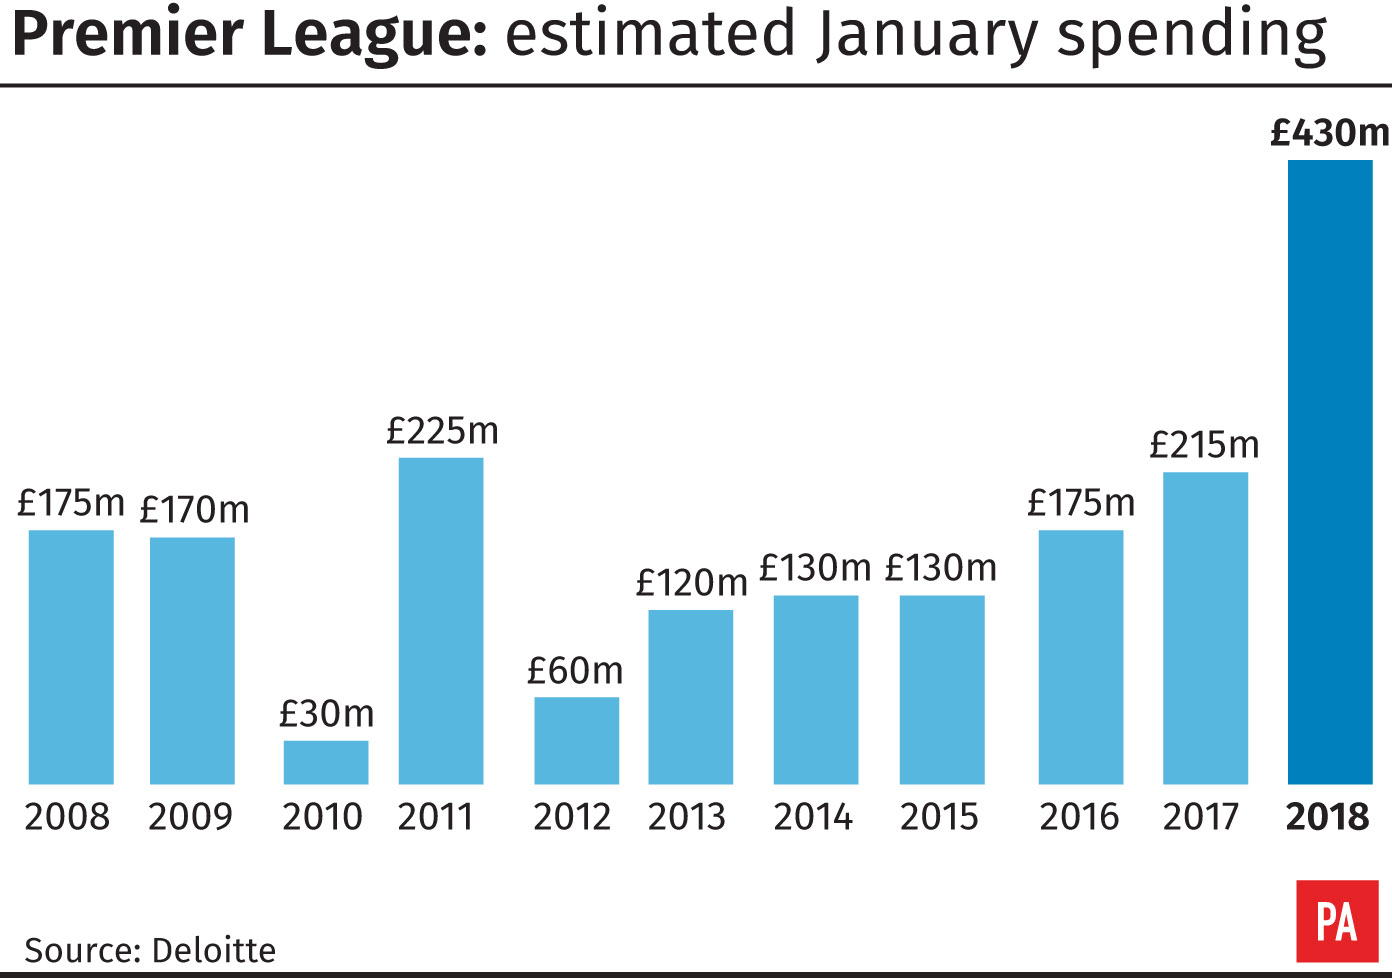 Premier League January spending